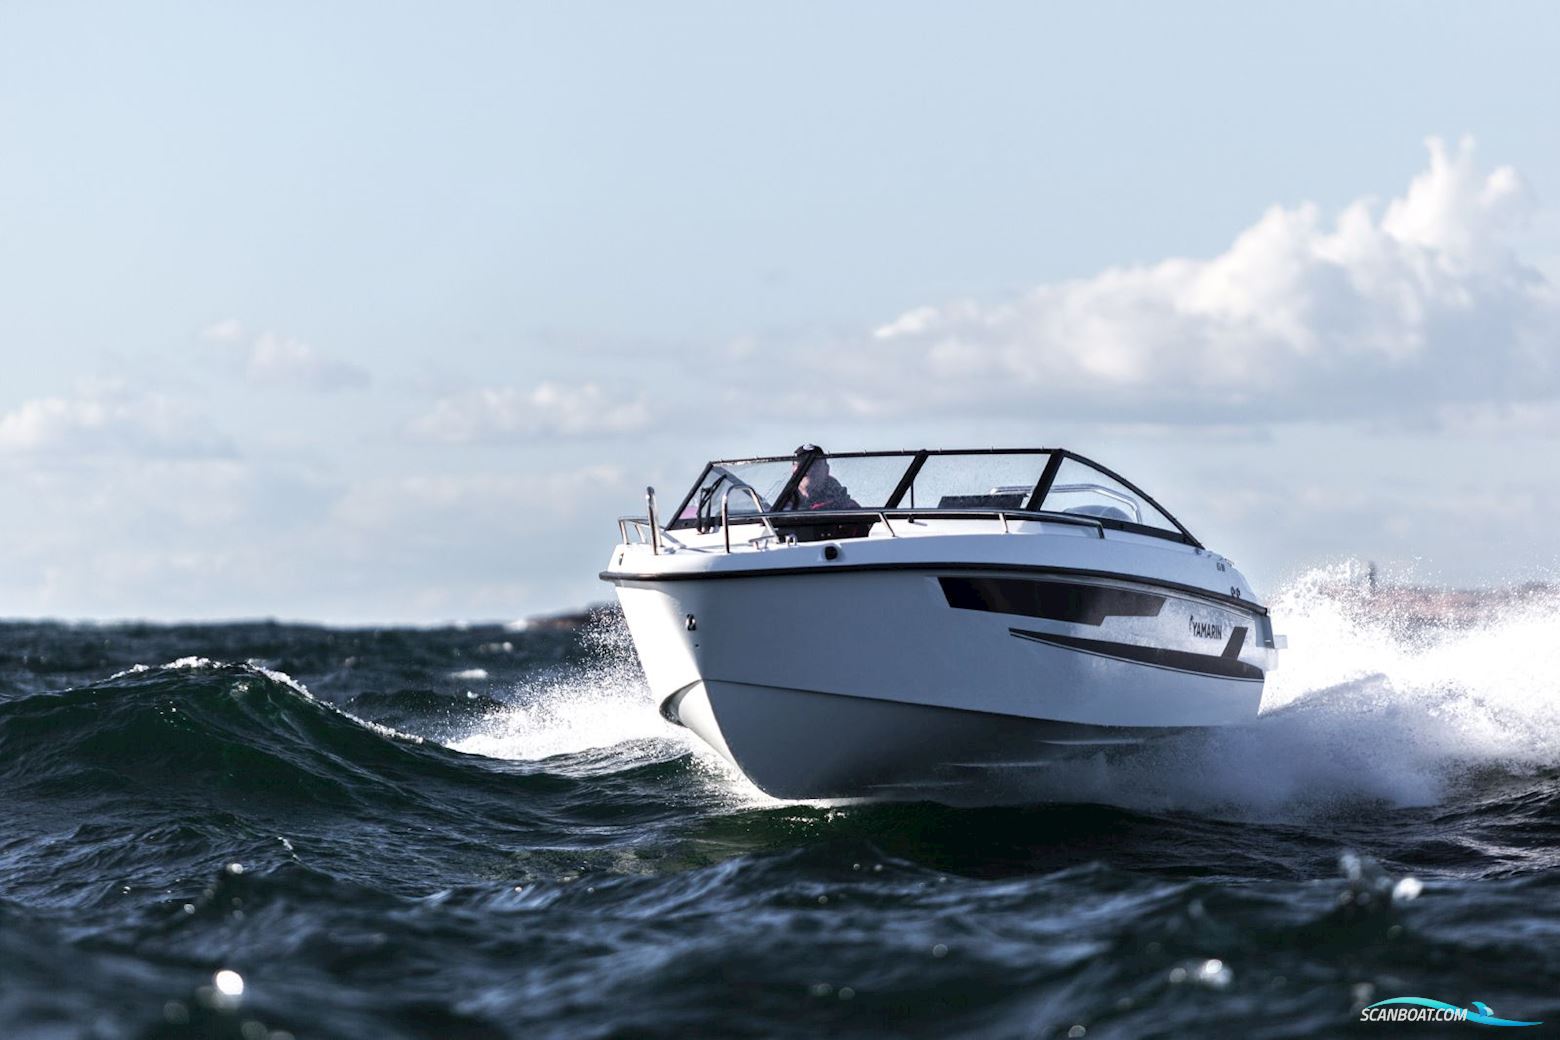 Yamarin 63 BR Power boat 2023, with Yamaha F115Betx engine, Denmark